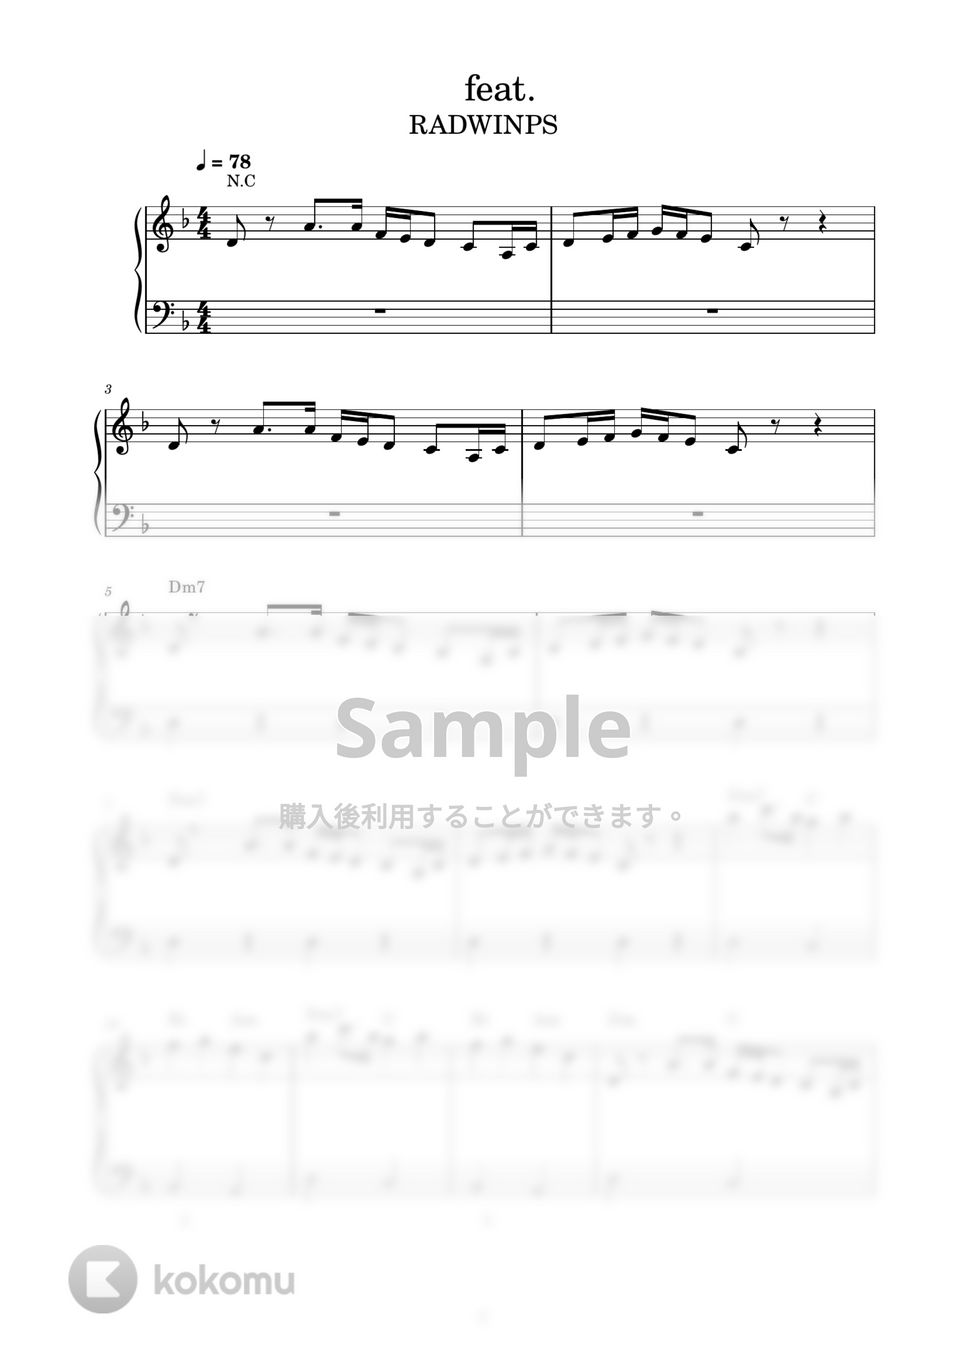 RADWIMPS - すずめ feat. 十明 (ピアノ楽譜 / かんたん両手 / 歌詞付き / ドレミ付き / 初心者向き) by piano.tokyo